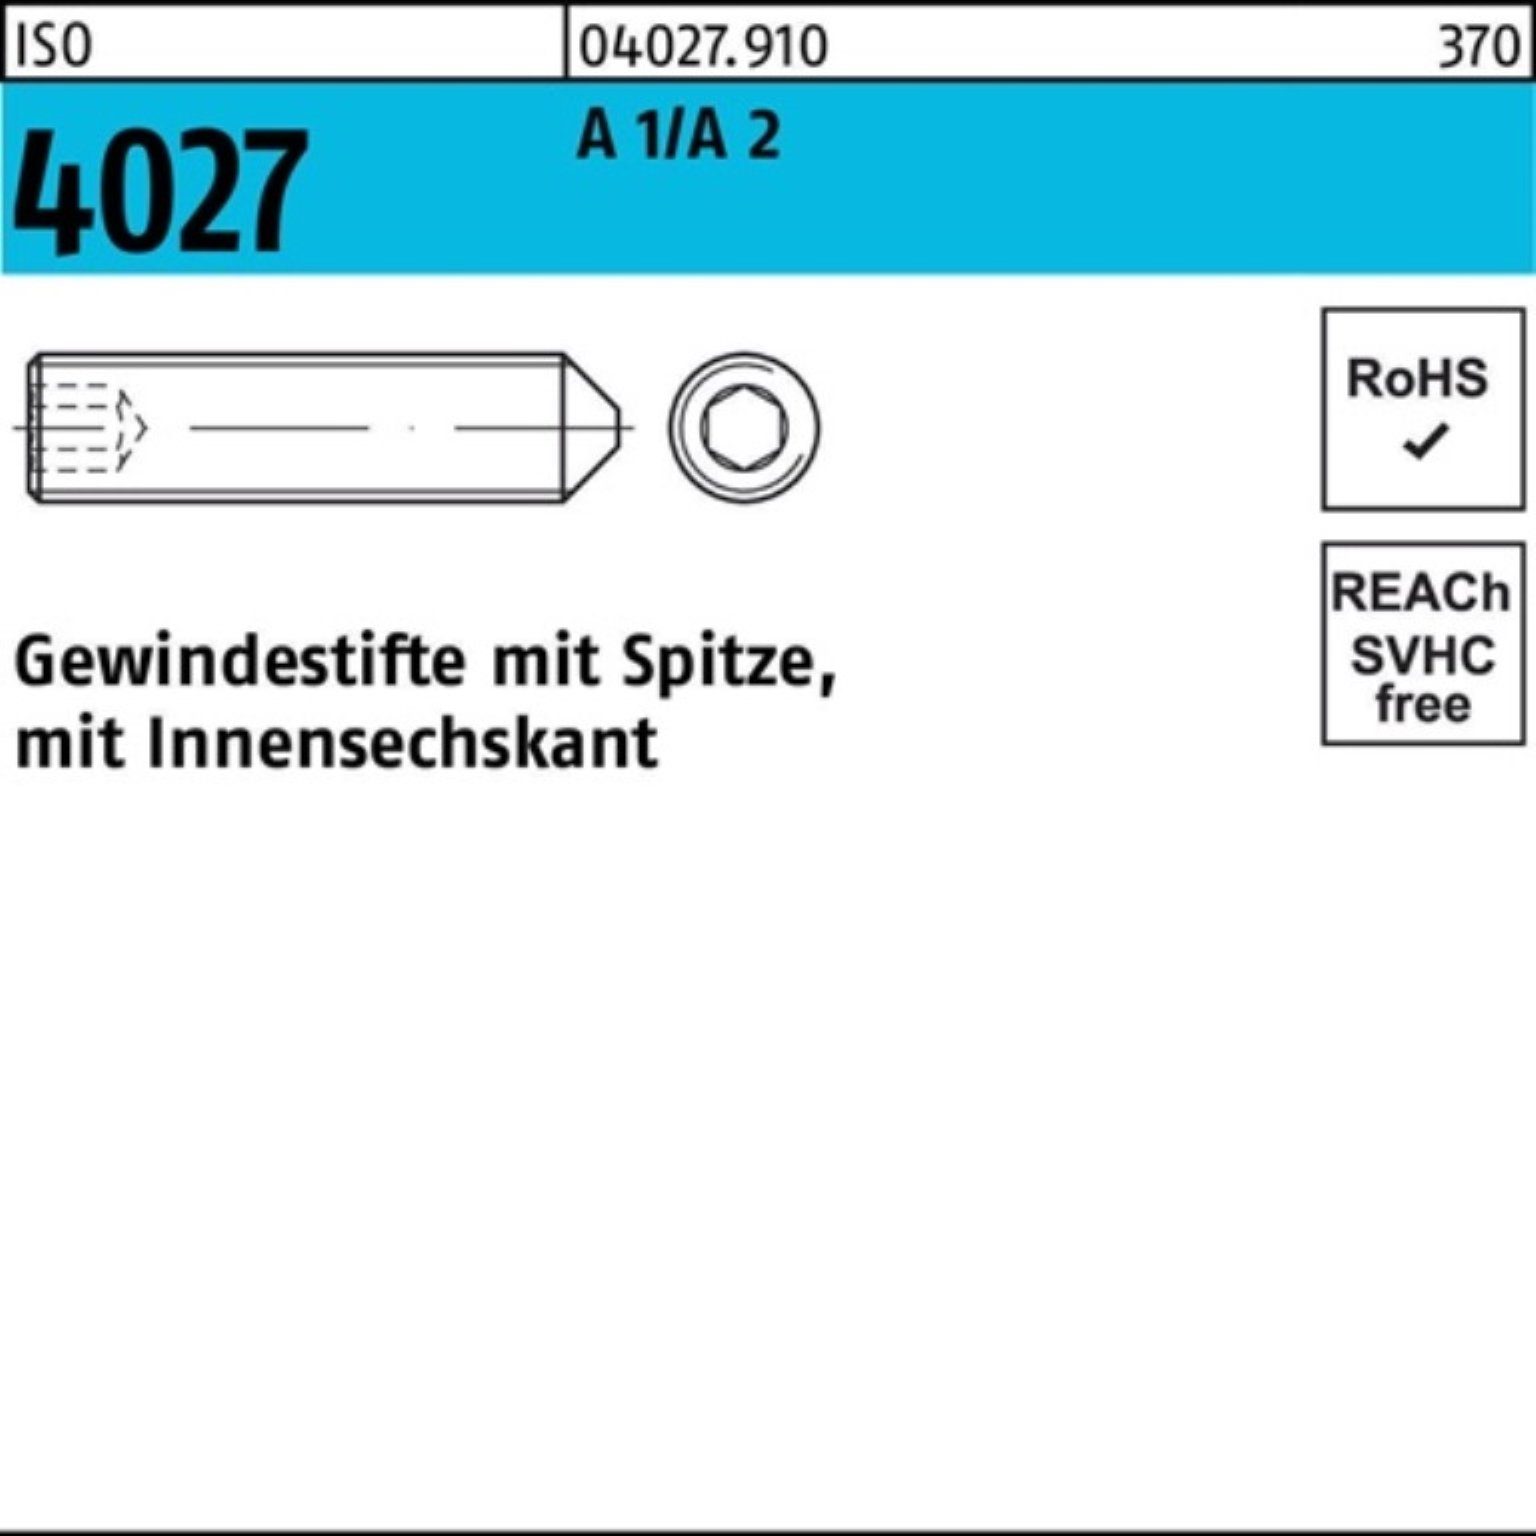 Reyher Gewindebolzen Gewindestift Spitze/Innen-6kt A Pack M4x Stüc 200 4027 ISO 2 30 200er